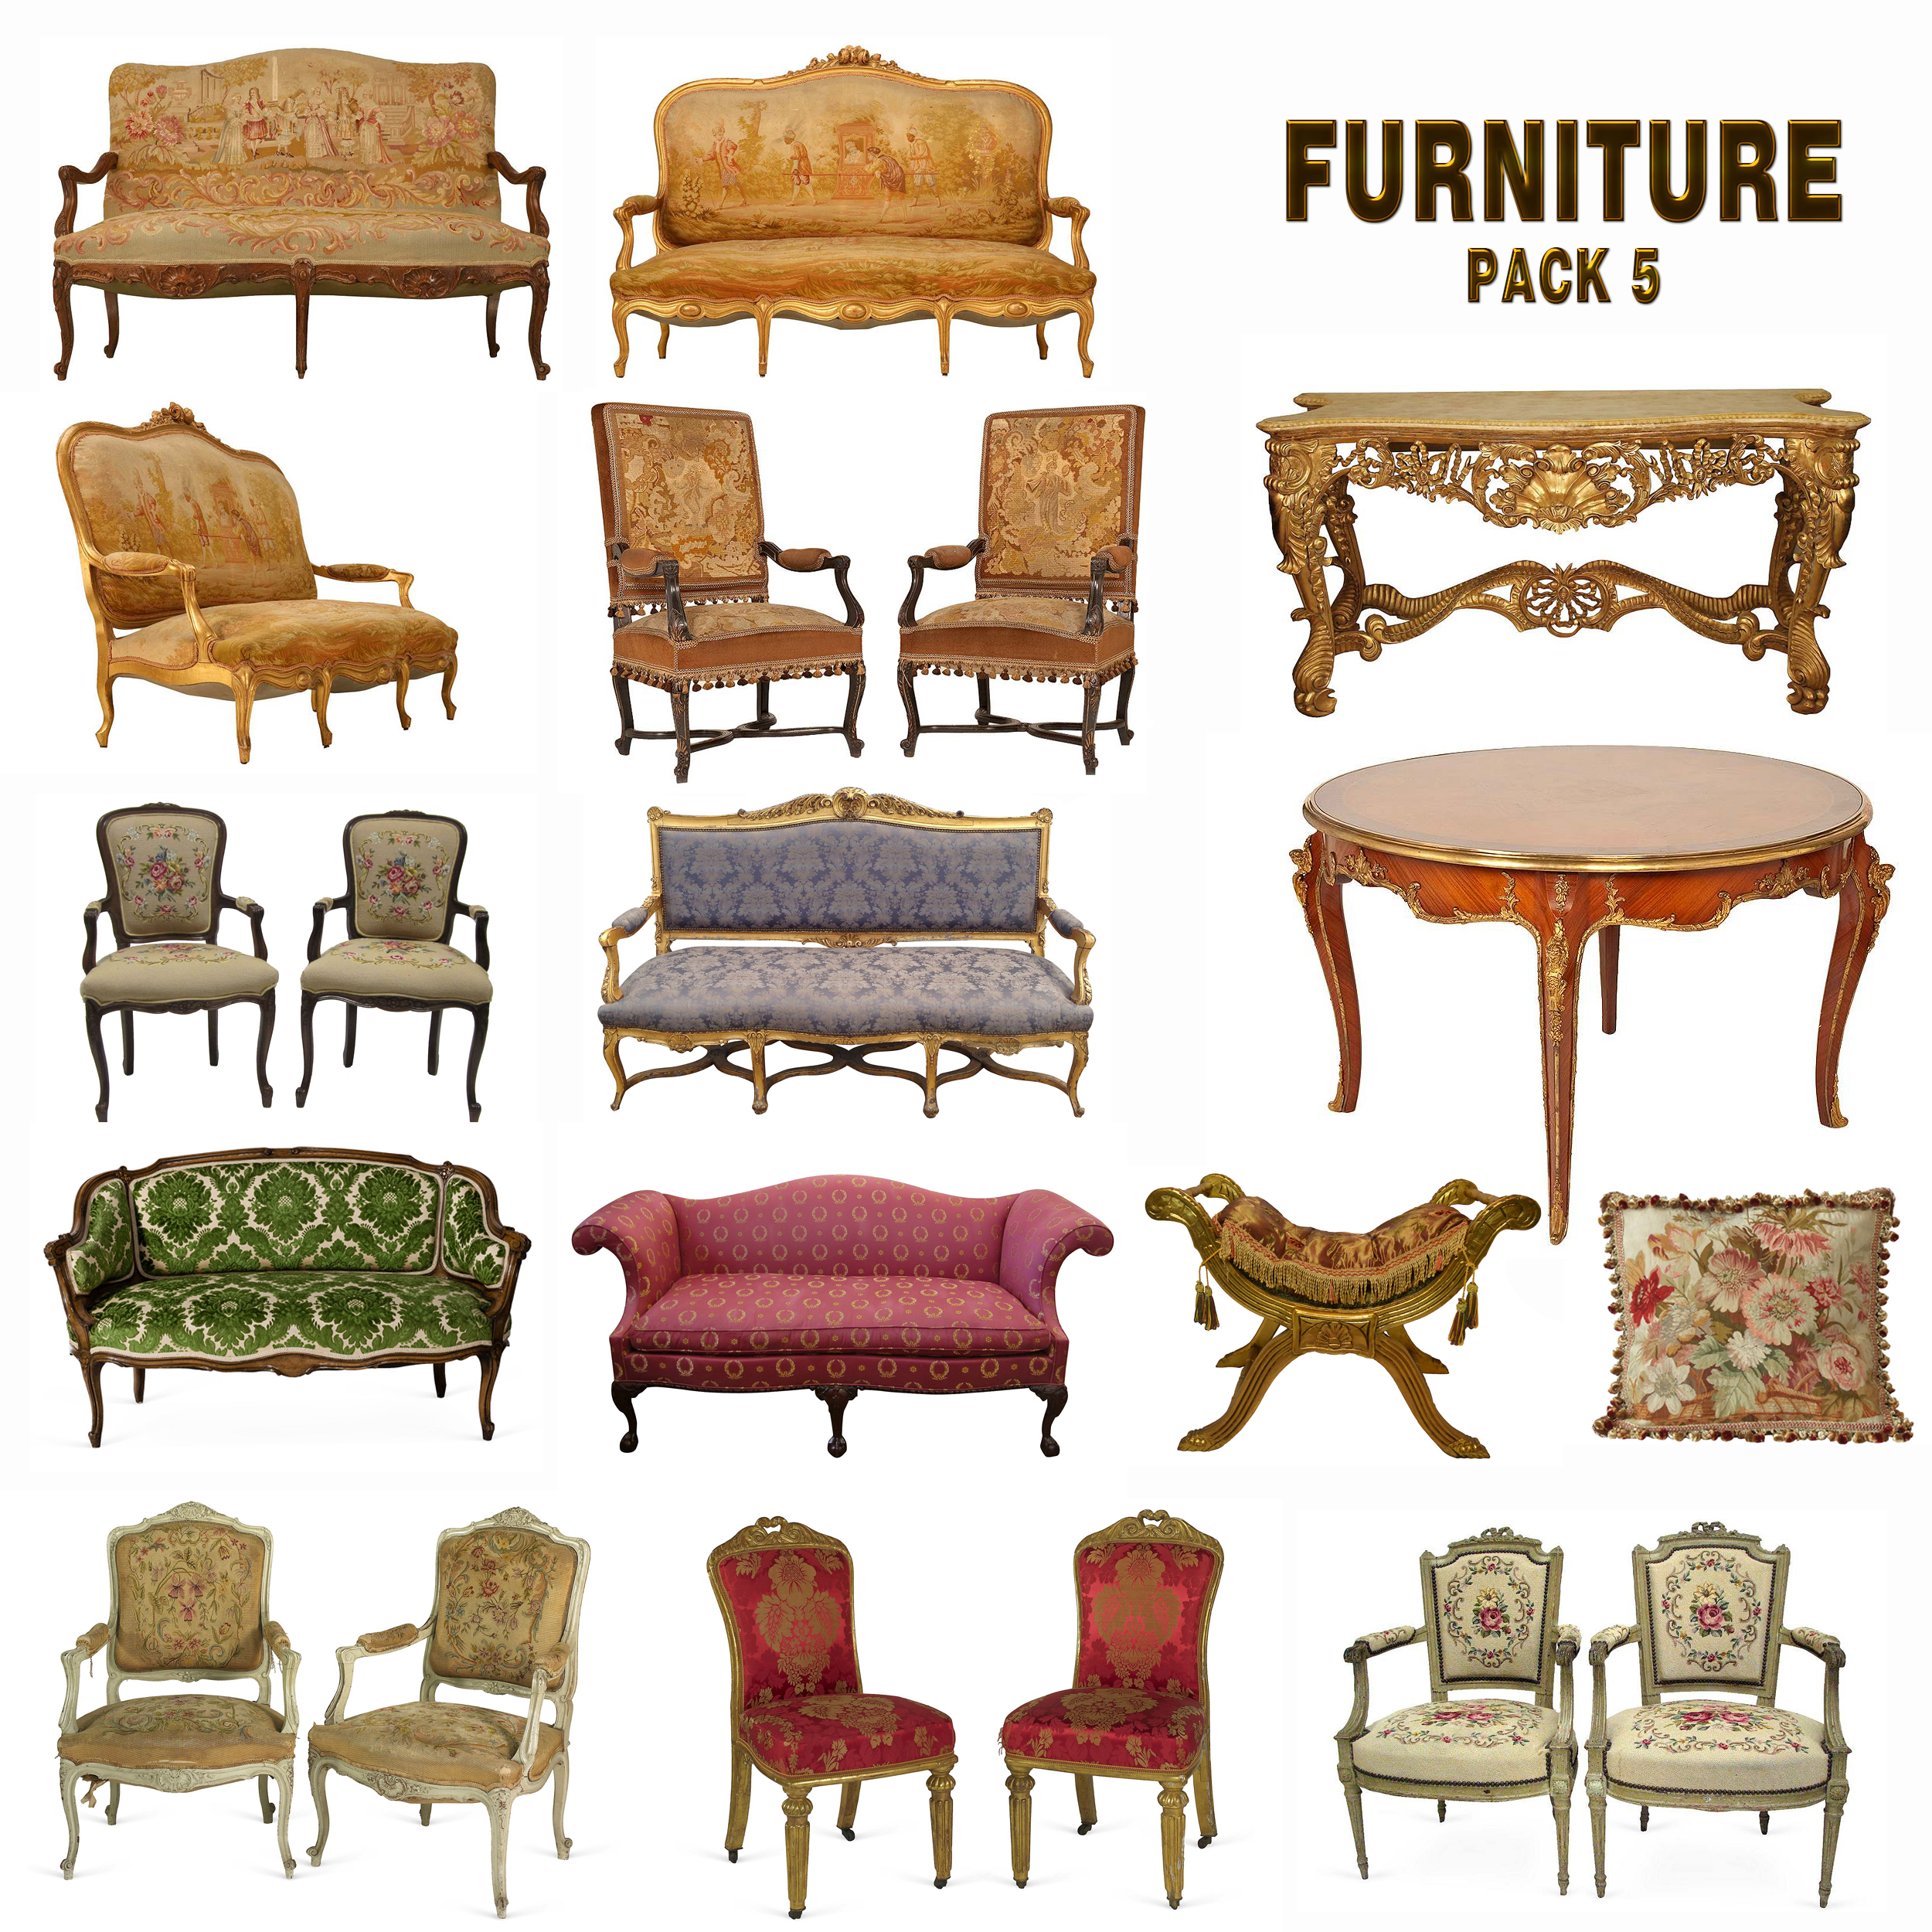 Furniture Pack 5